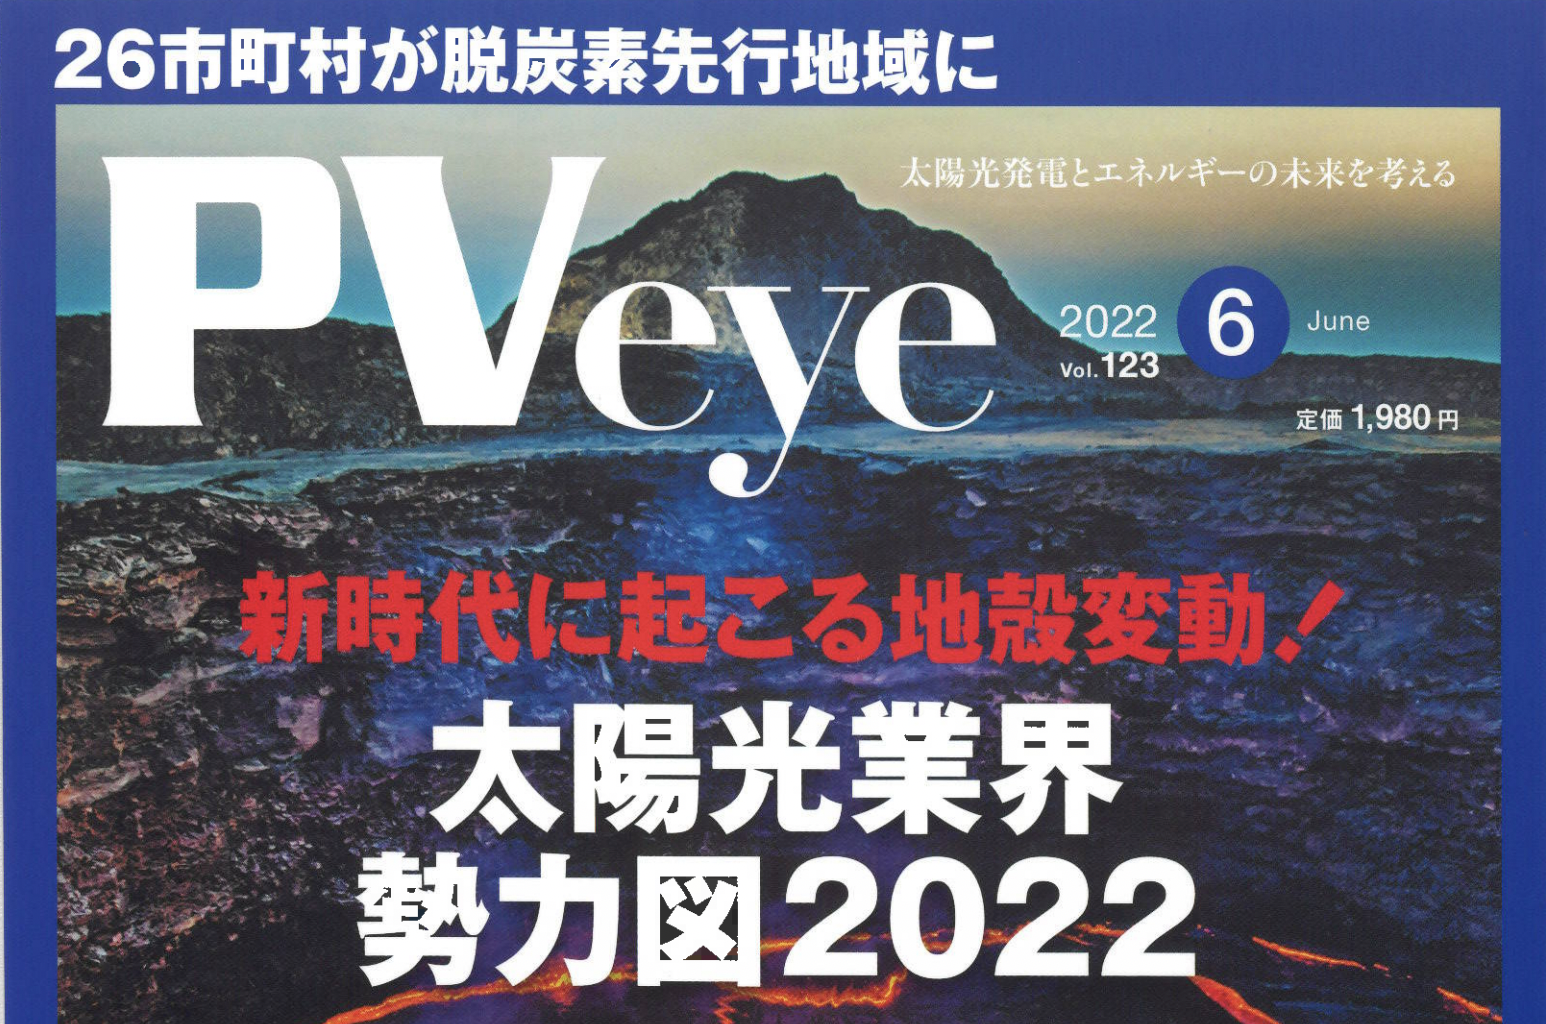 再生可能エネルギーの専門メディア「PVeye」6月号に掲載されました